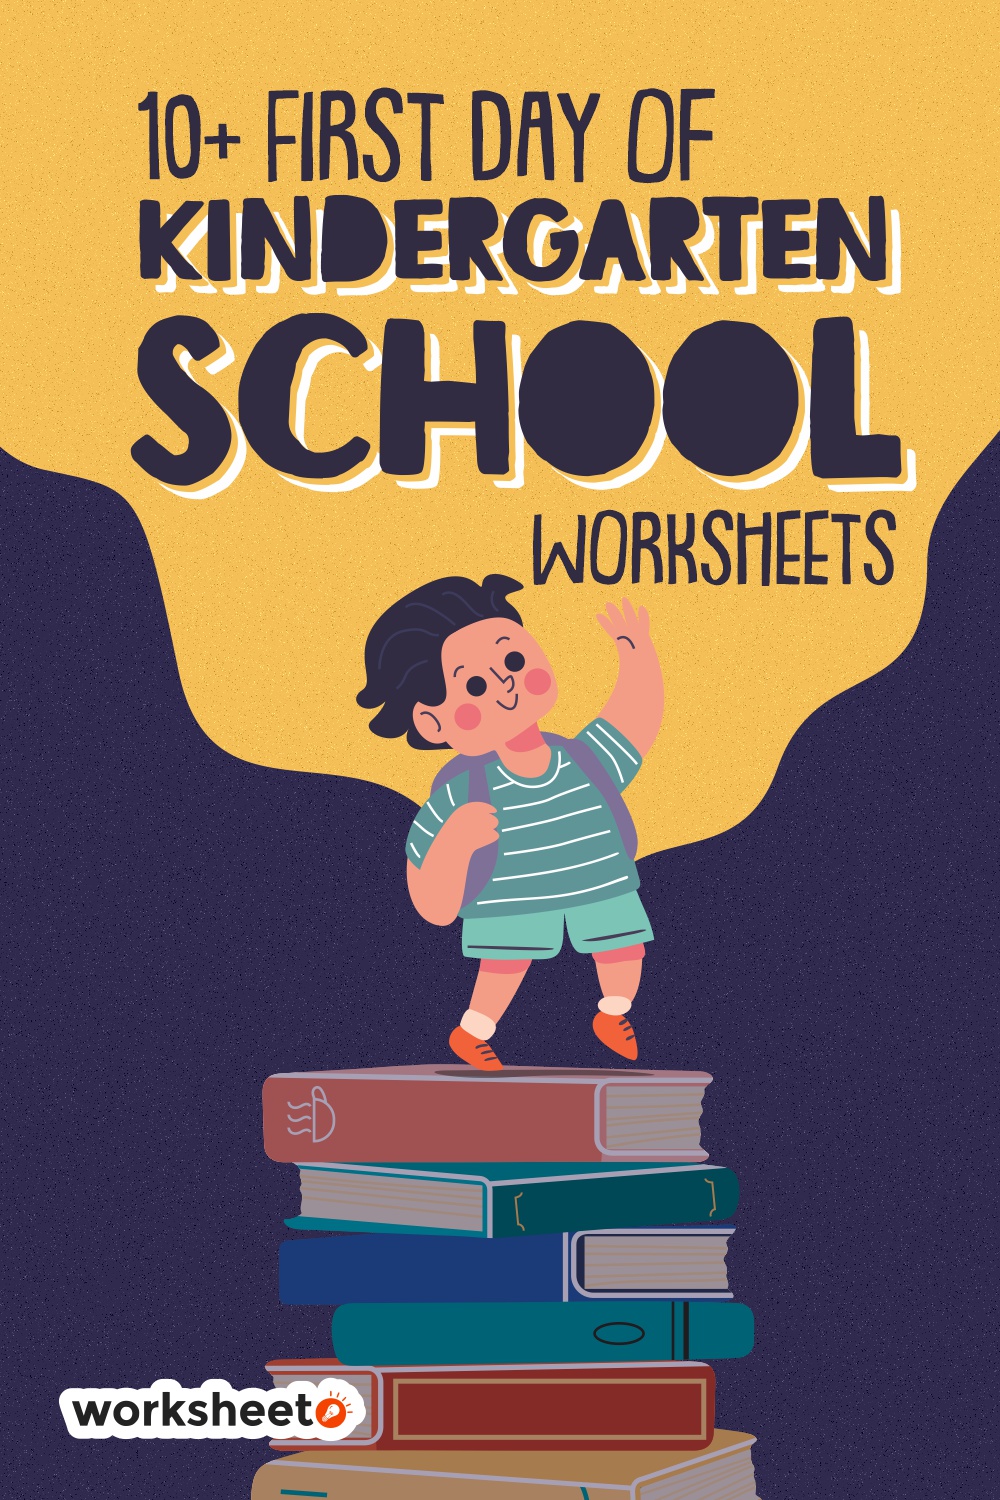 First Day of Kindergarten School Worksheets